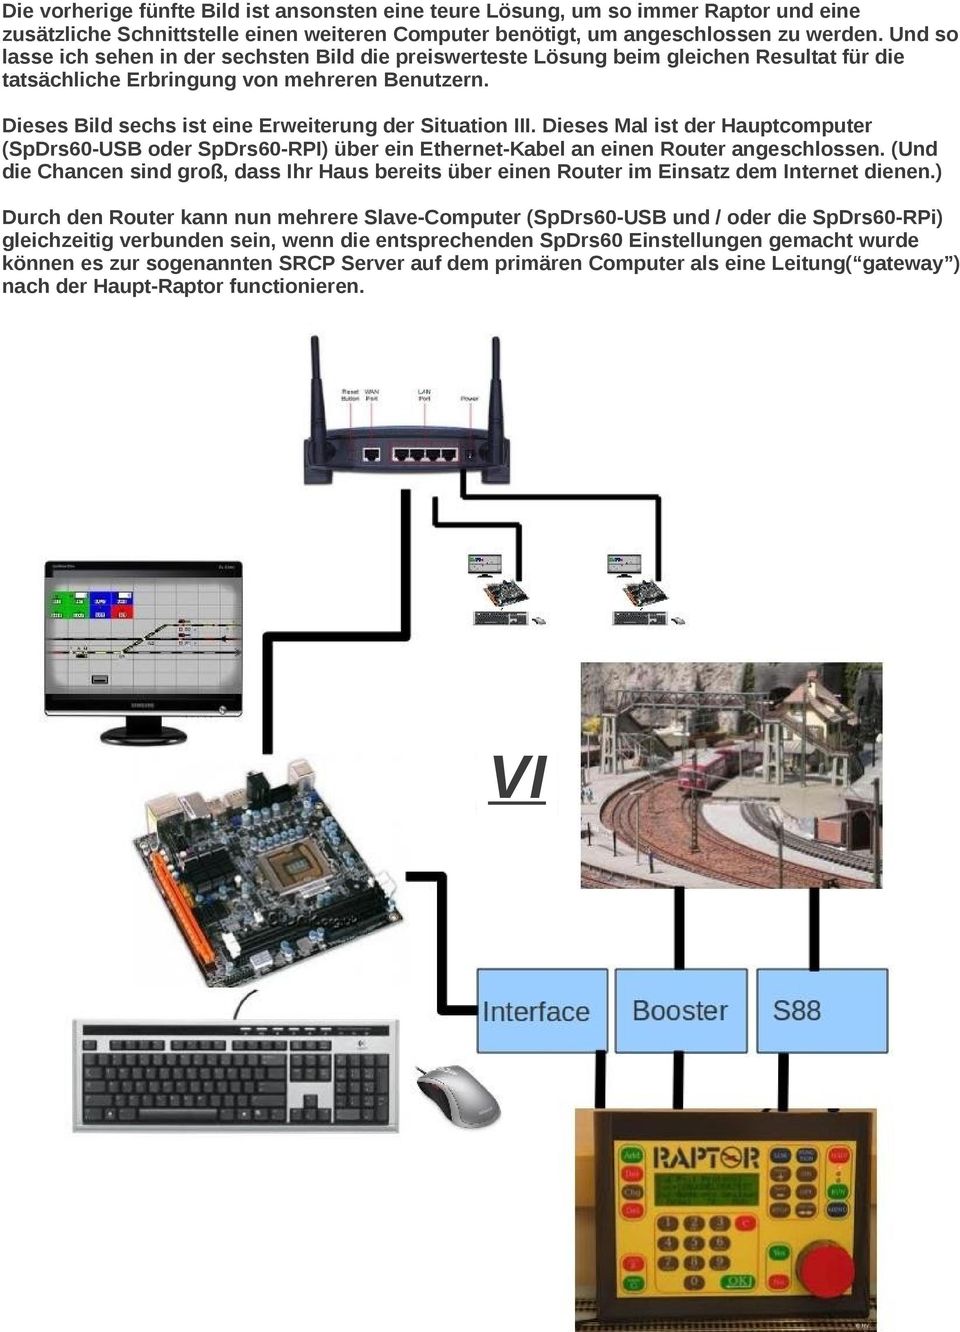 Dieses Bild sechs ist eine Erweiterung der Situation III. Dieses Mal ist der Hauptcomputer (SpDrs60-USB oder SpDrs60-RPI) über ein Ethernet-Kabel an einen Router angeschlossen.